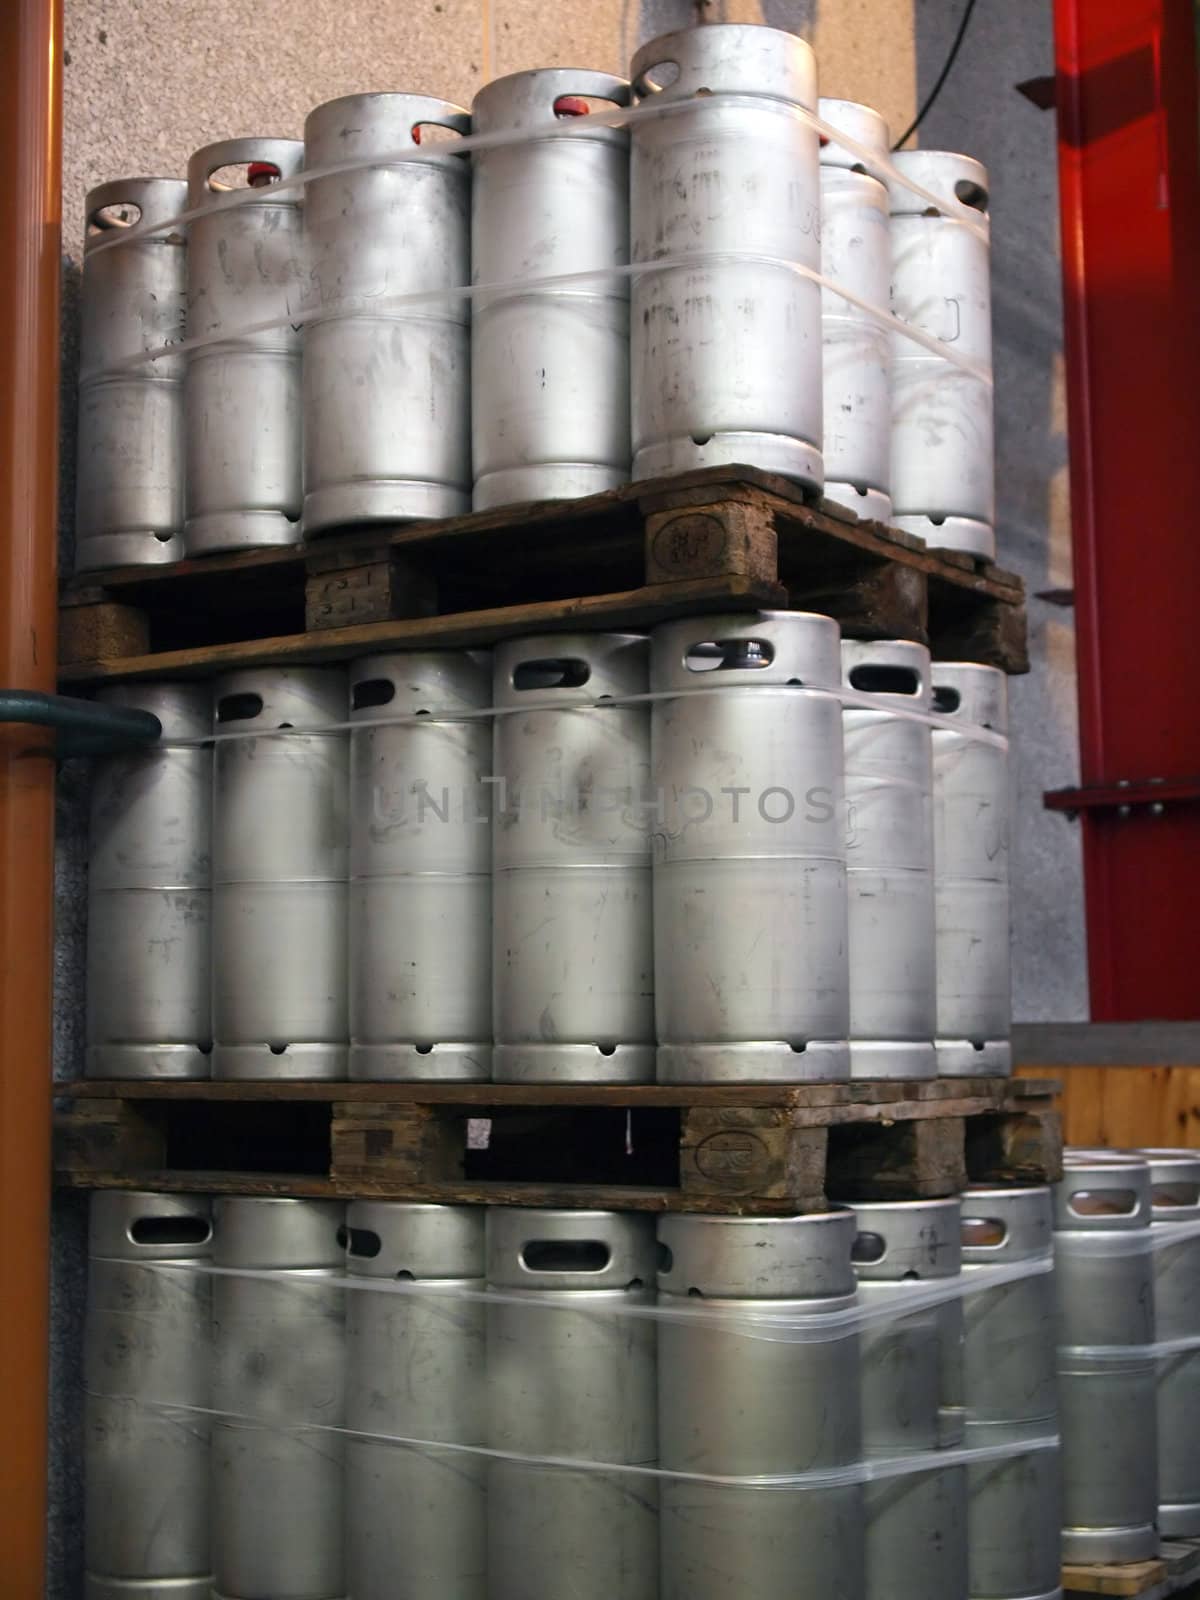 Beer kegs barrels in a brewery pub       